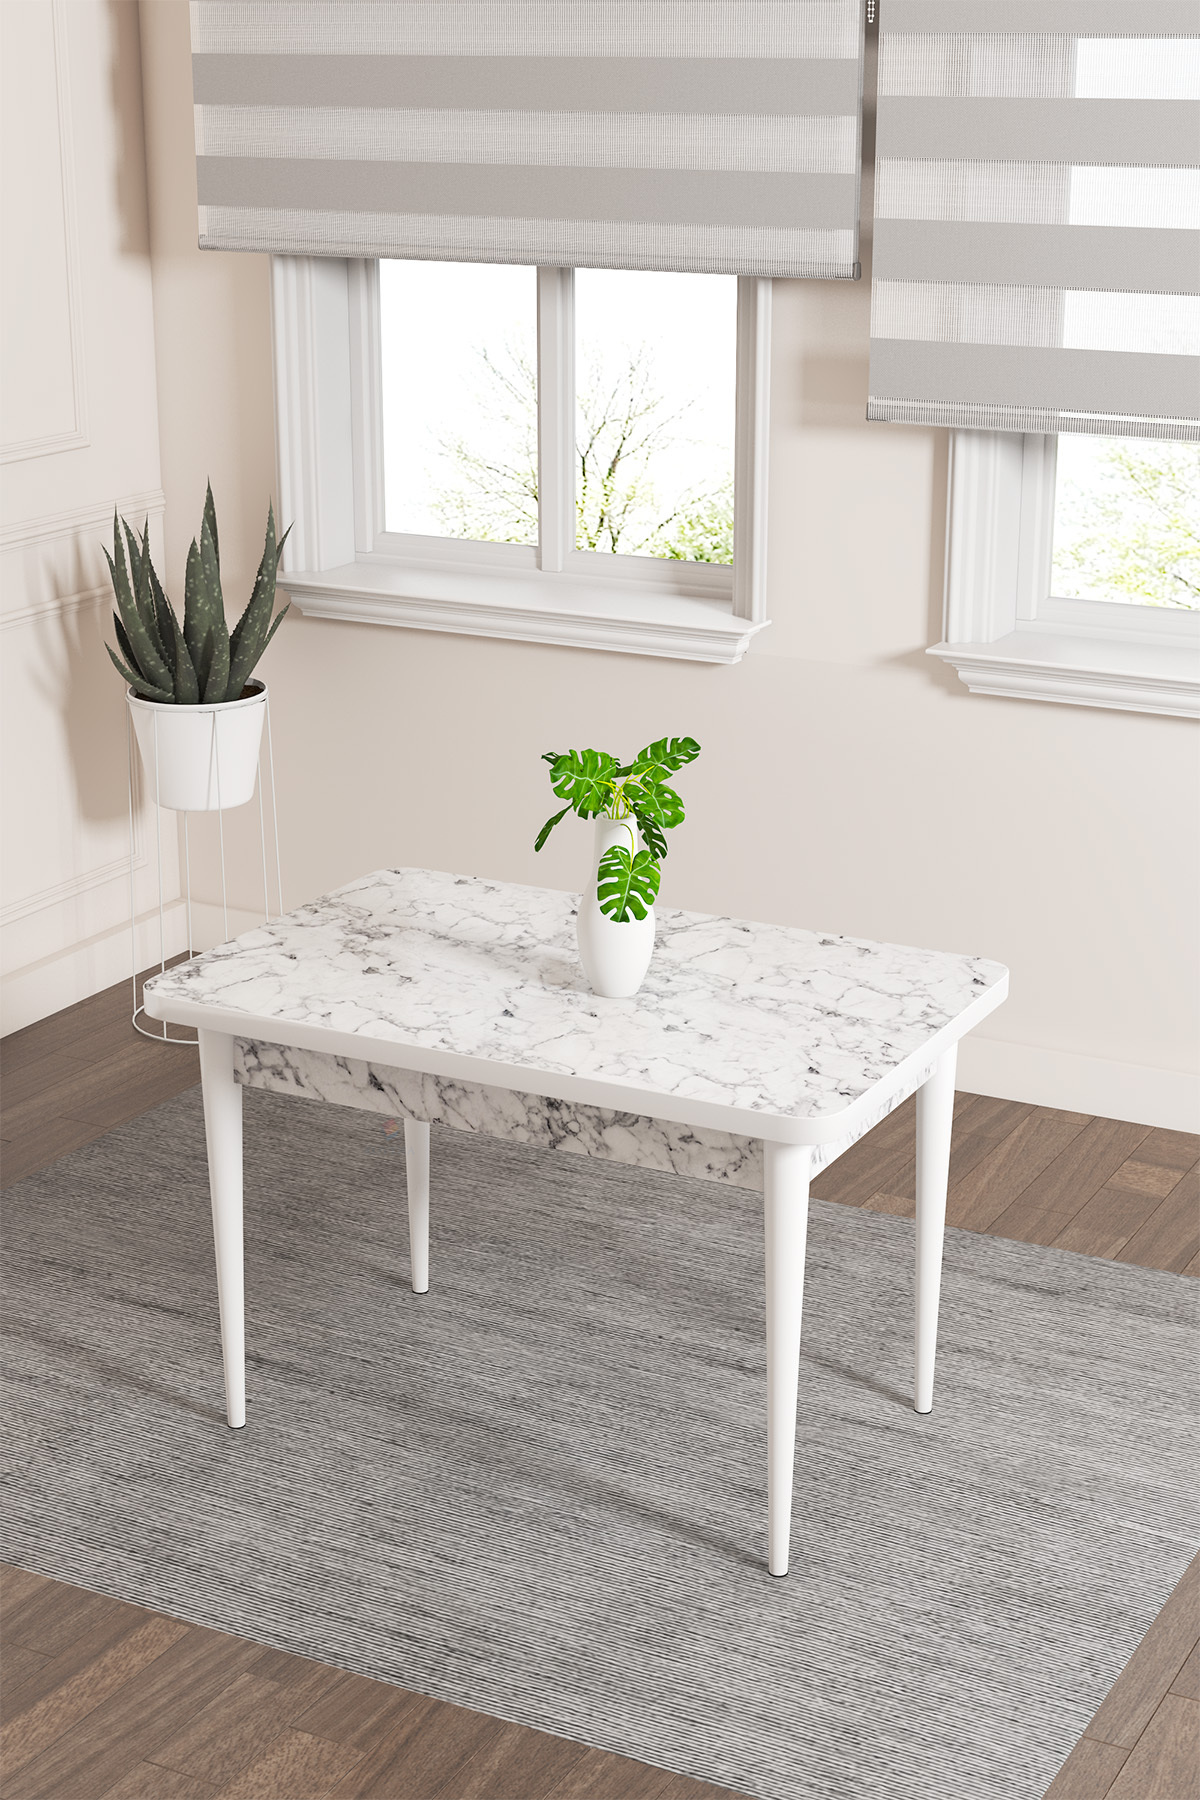 Rovena Lera Beyaz Mermer Desen 70x110 Mdf Sabit Yemek Masası Takımı 4 Adet Sandalye